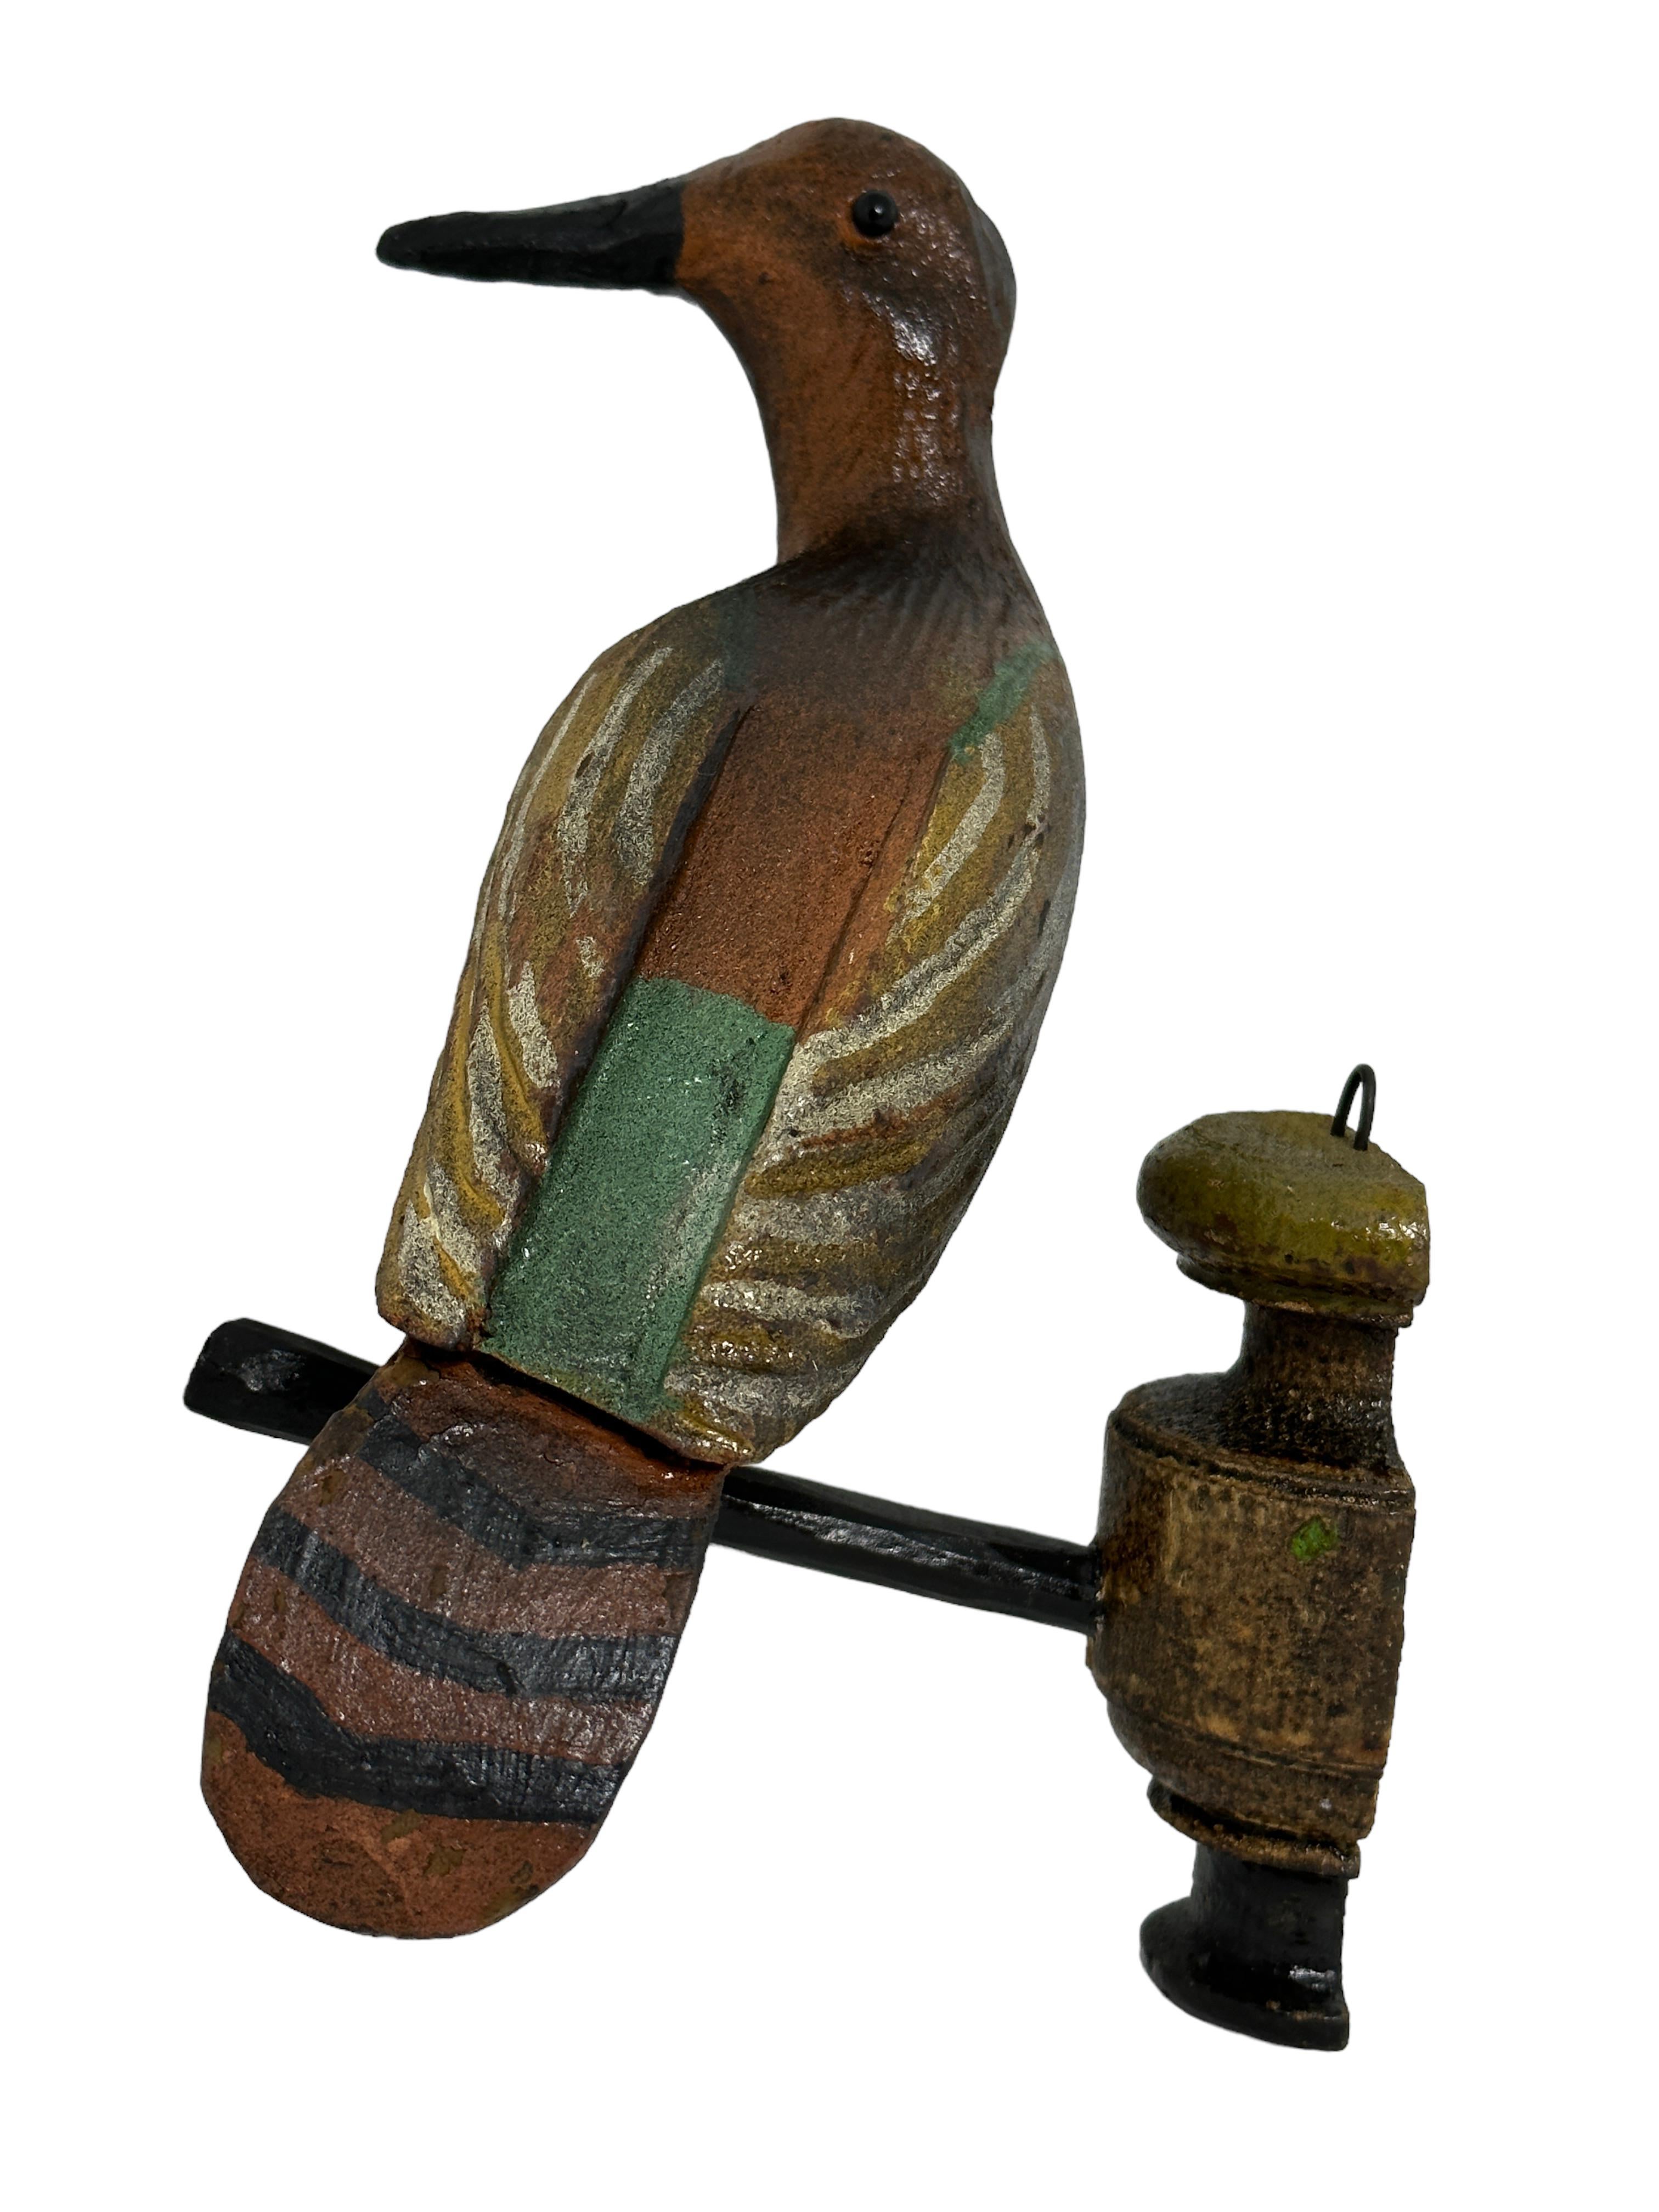 20th Century Large Vichtauer Hand Carved Wood Bird, Black Forest Folk Art, Austria, 1910s